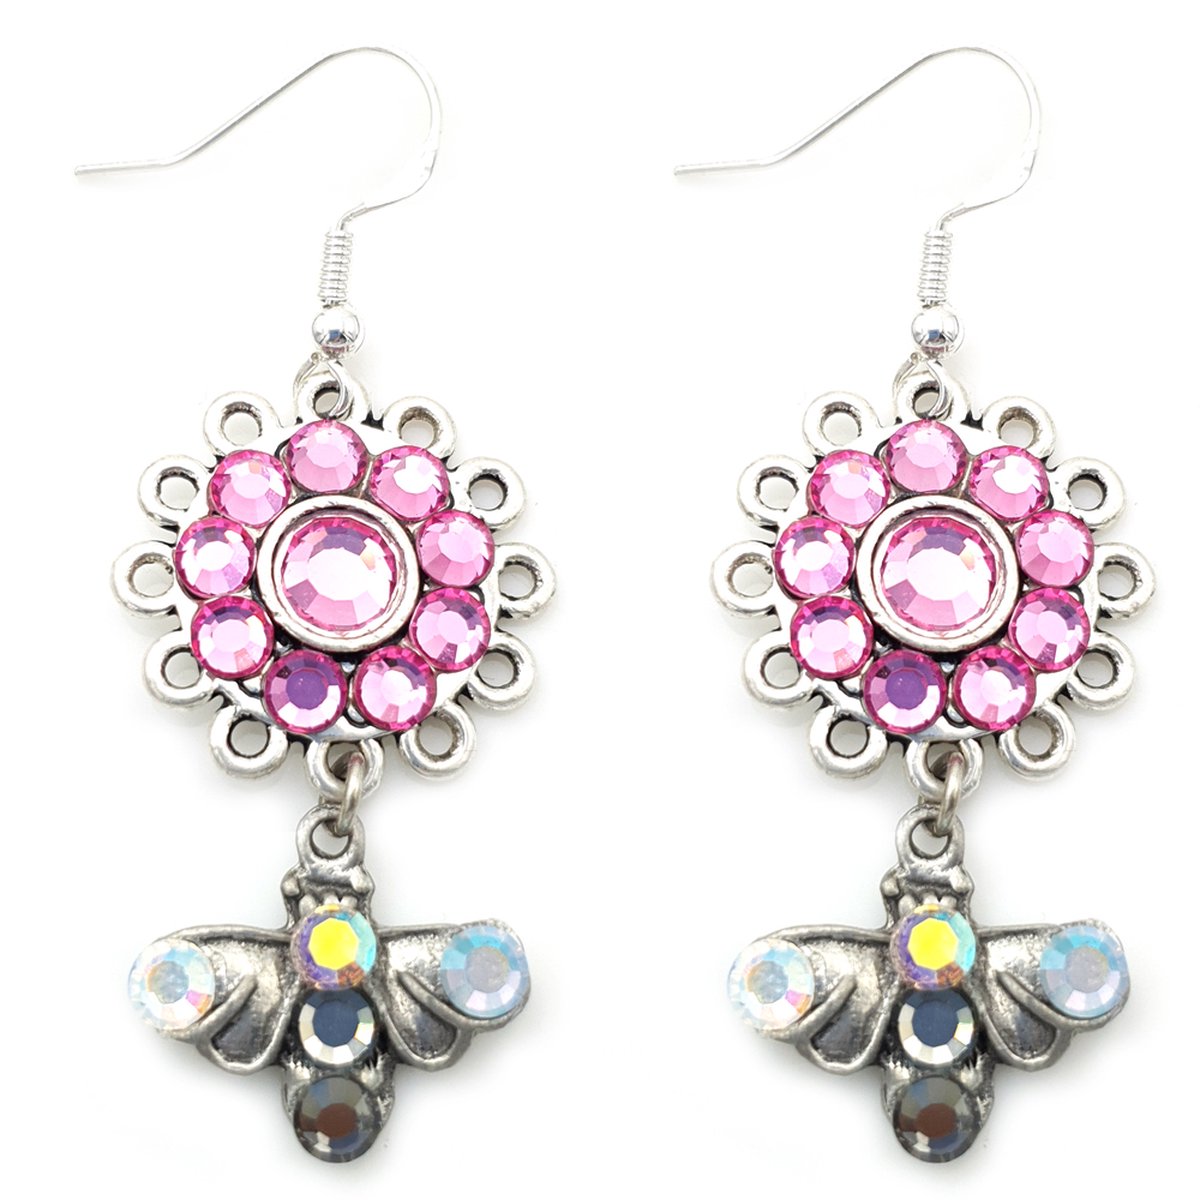 Oorhangers met zilveren haakje en oud zilver-look hanger met Swarovski kristal elementen bloem en vlinder roze